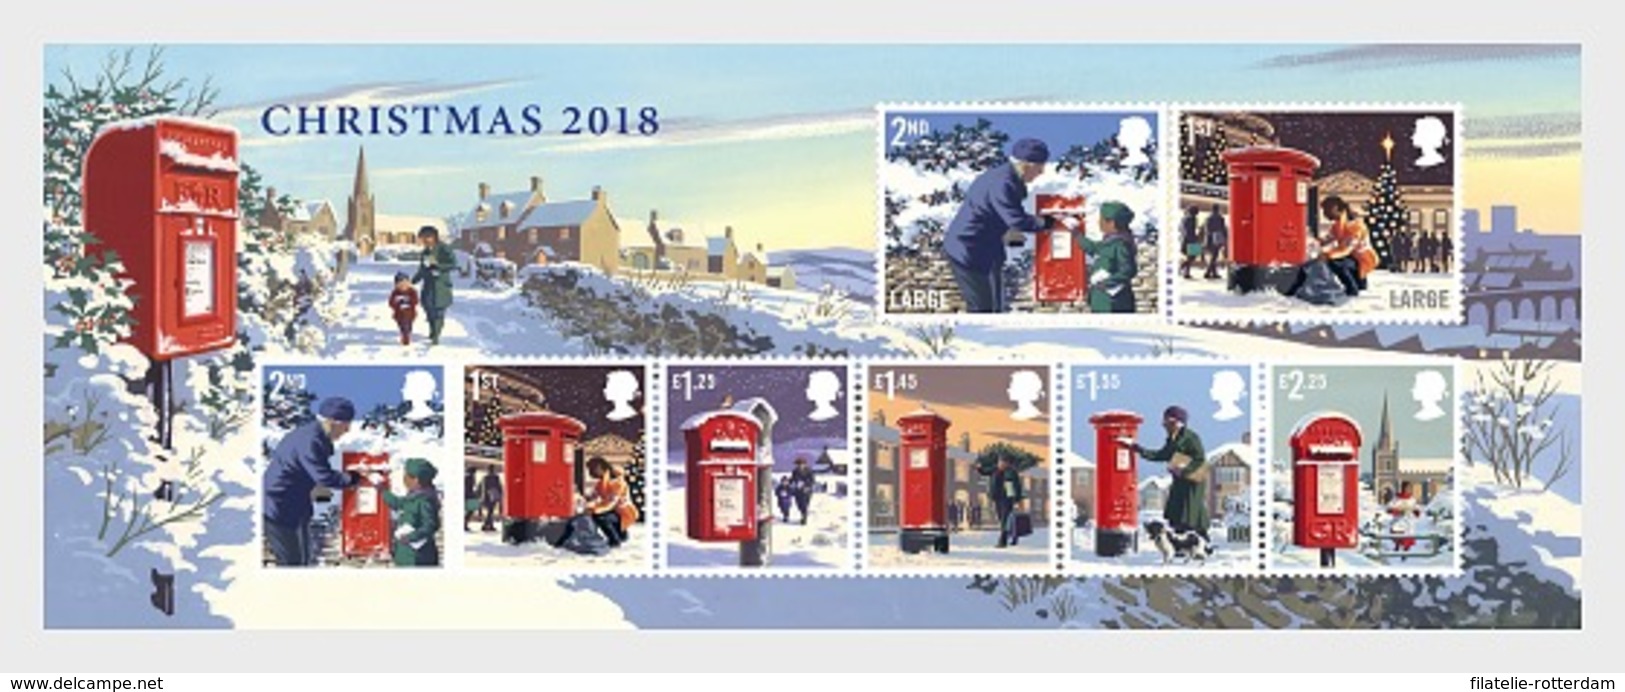 Groot-Brittannië / Great Britain - Postfris / MNH - Sheet Kerstmis 2018 - Ungebraucht